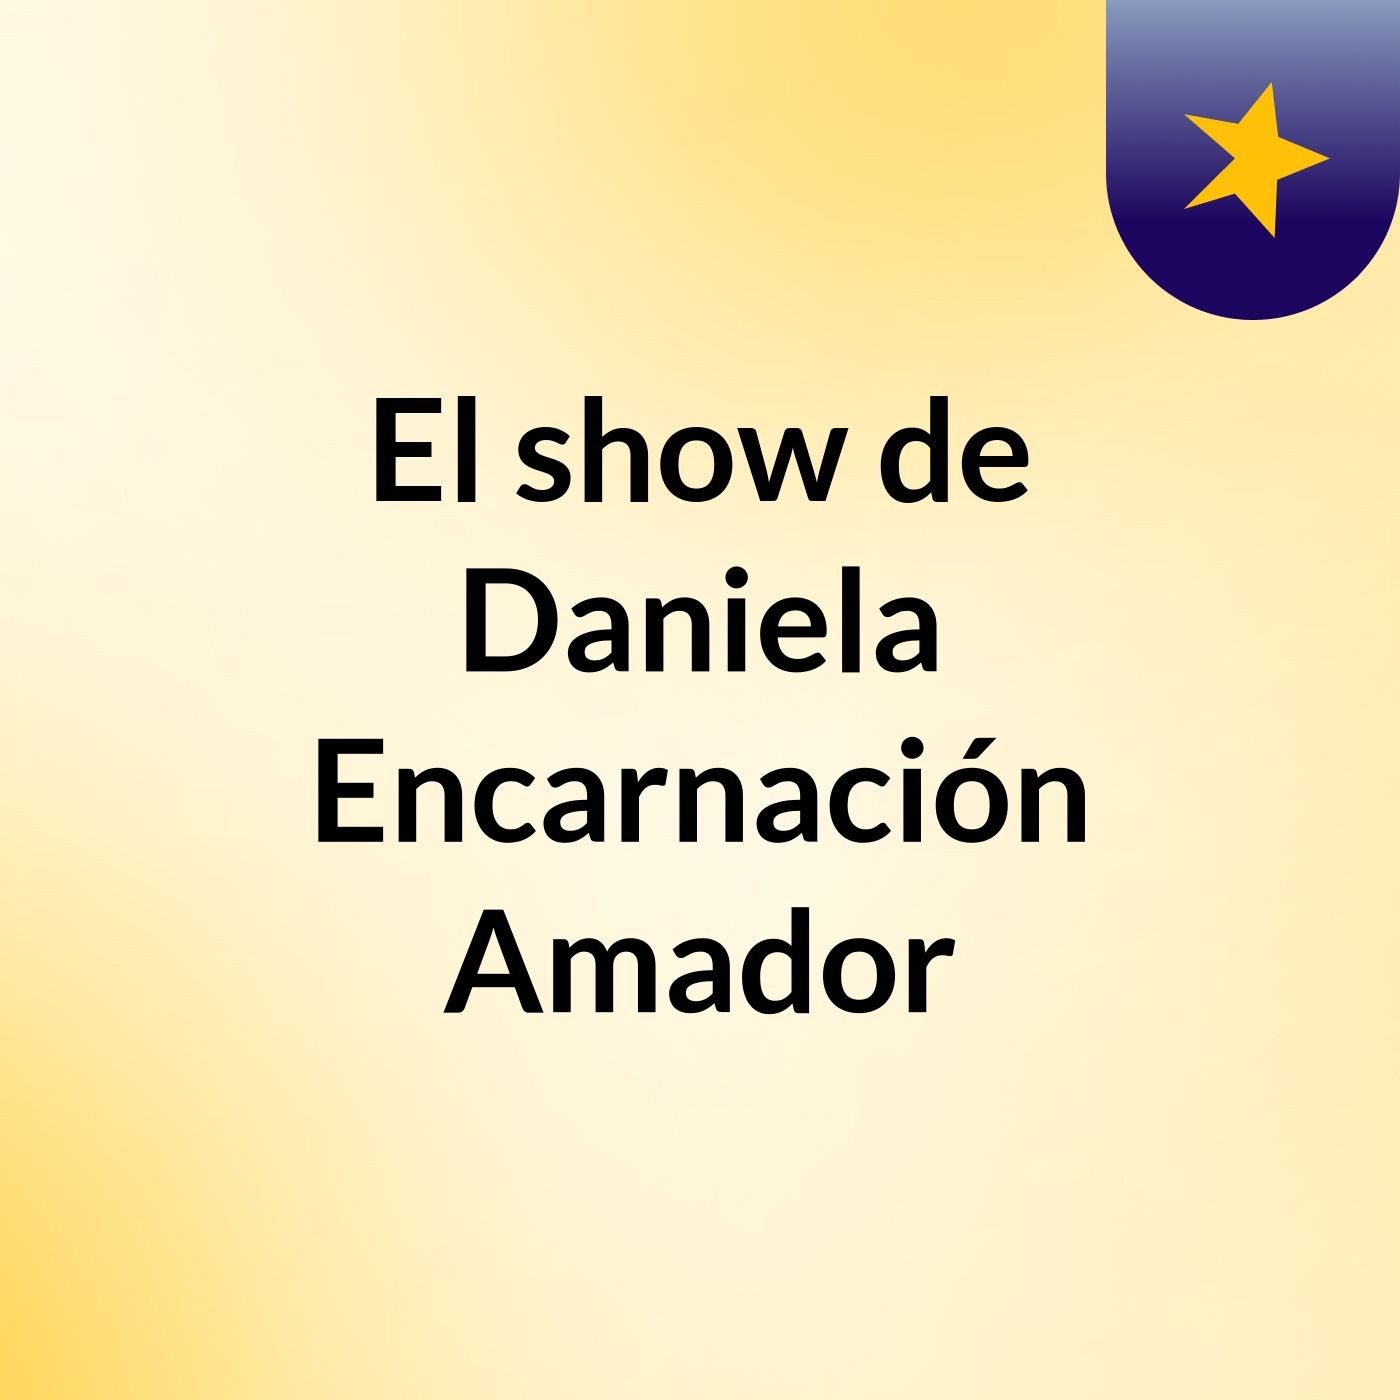 El show de Daniela Encarnación Amador